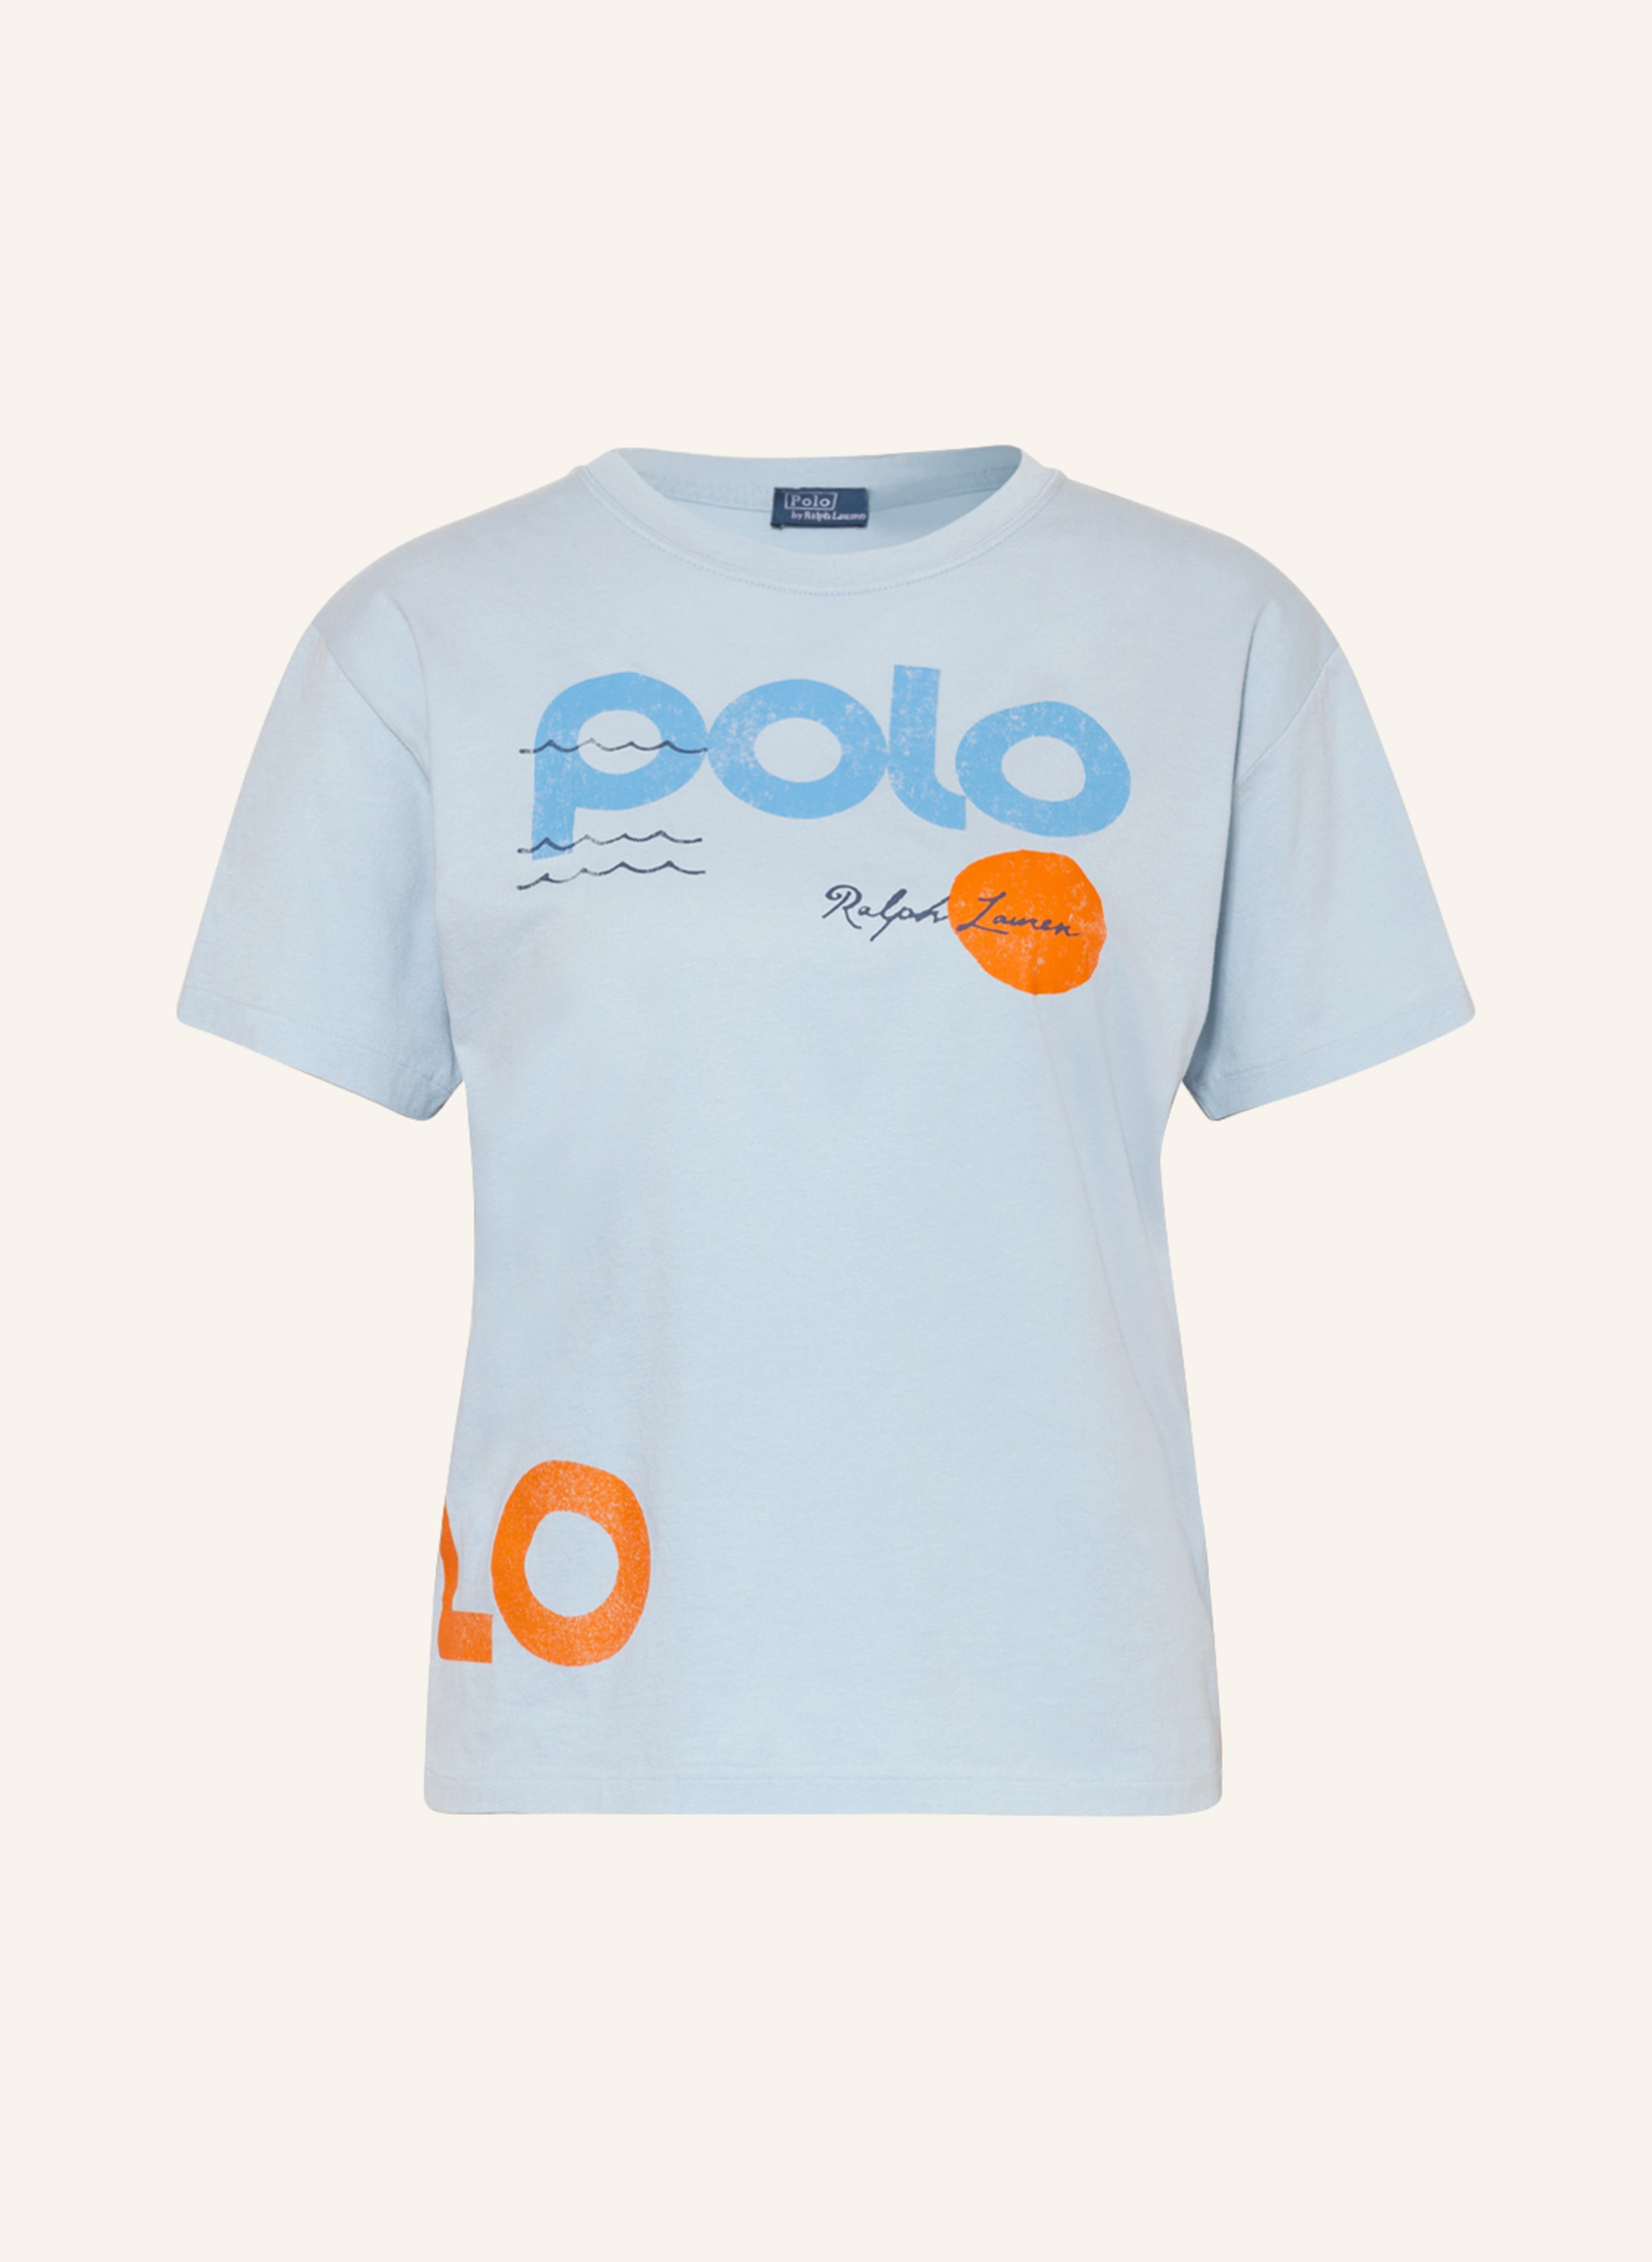 POLO RALPH LAUREN T-shirt in light blue/ blue/ orange | Breuninger